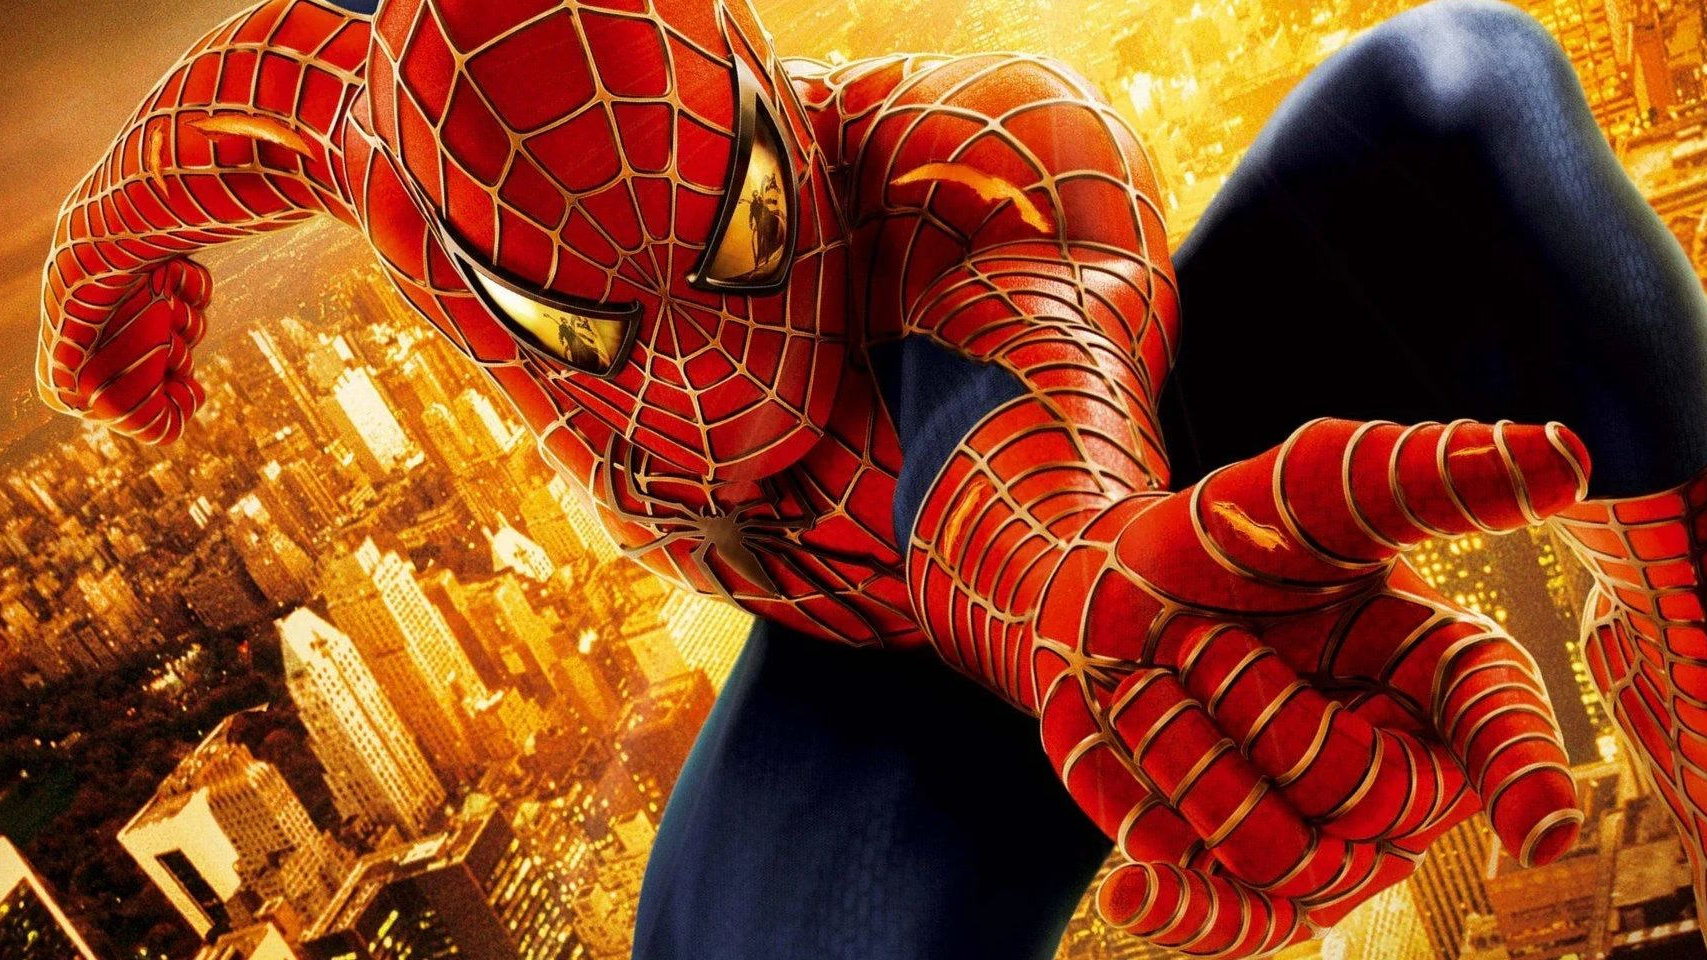 A screenshot of a Spider-Man 2 poster